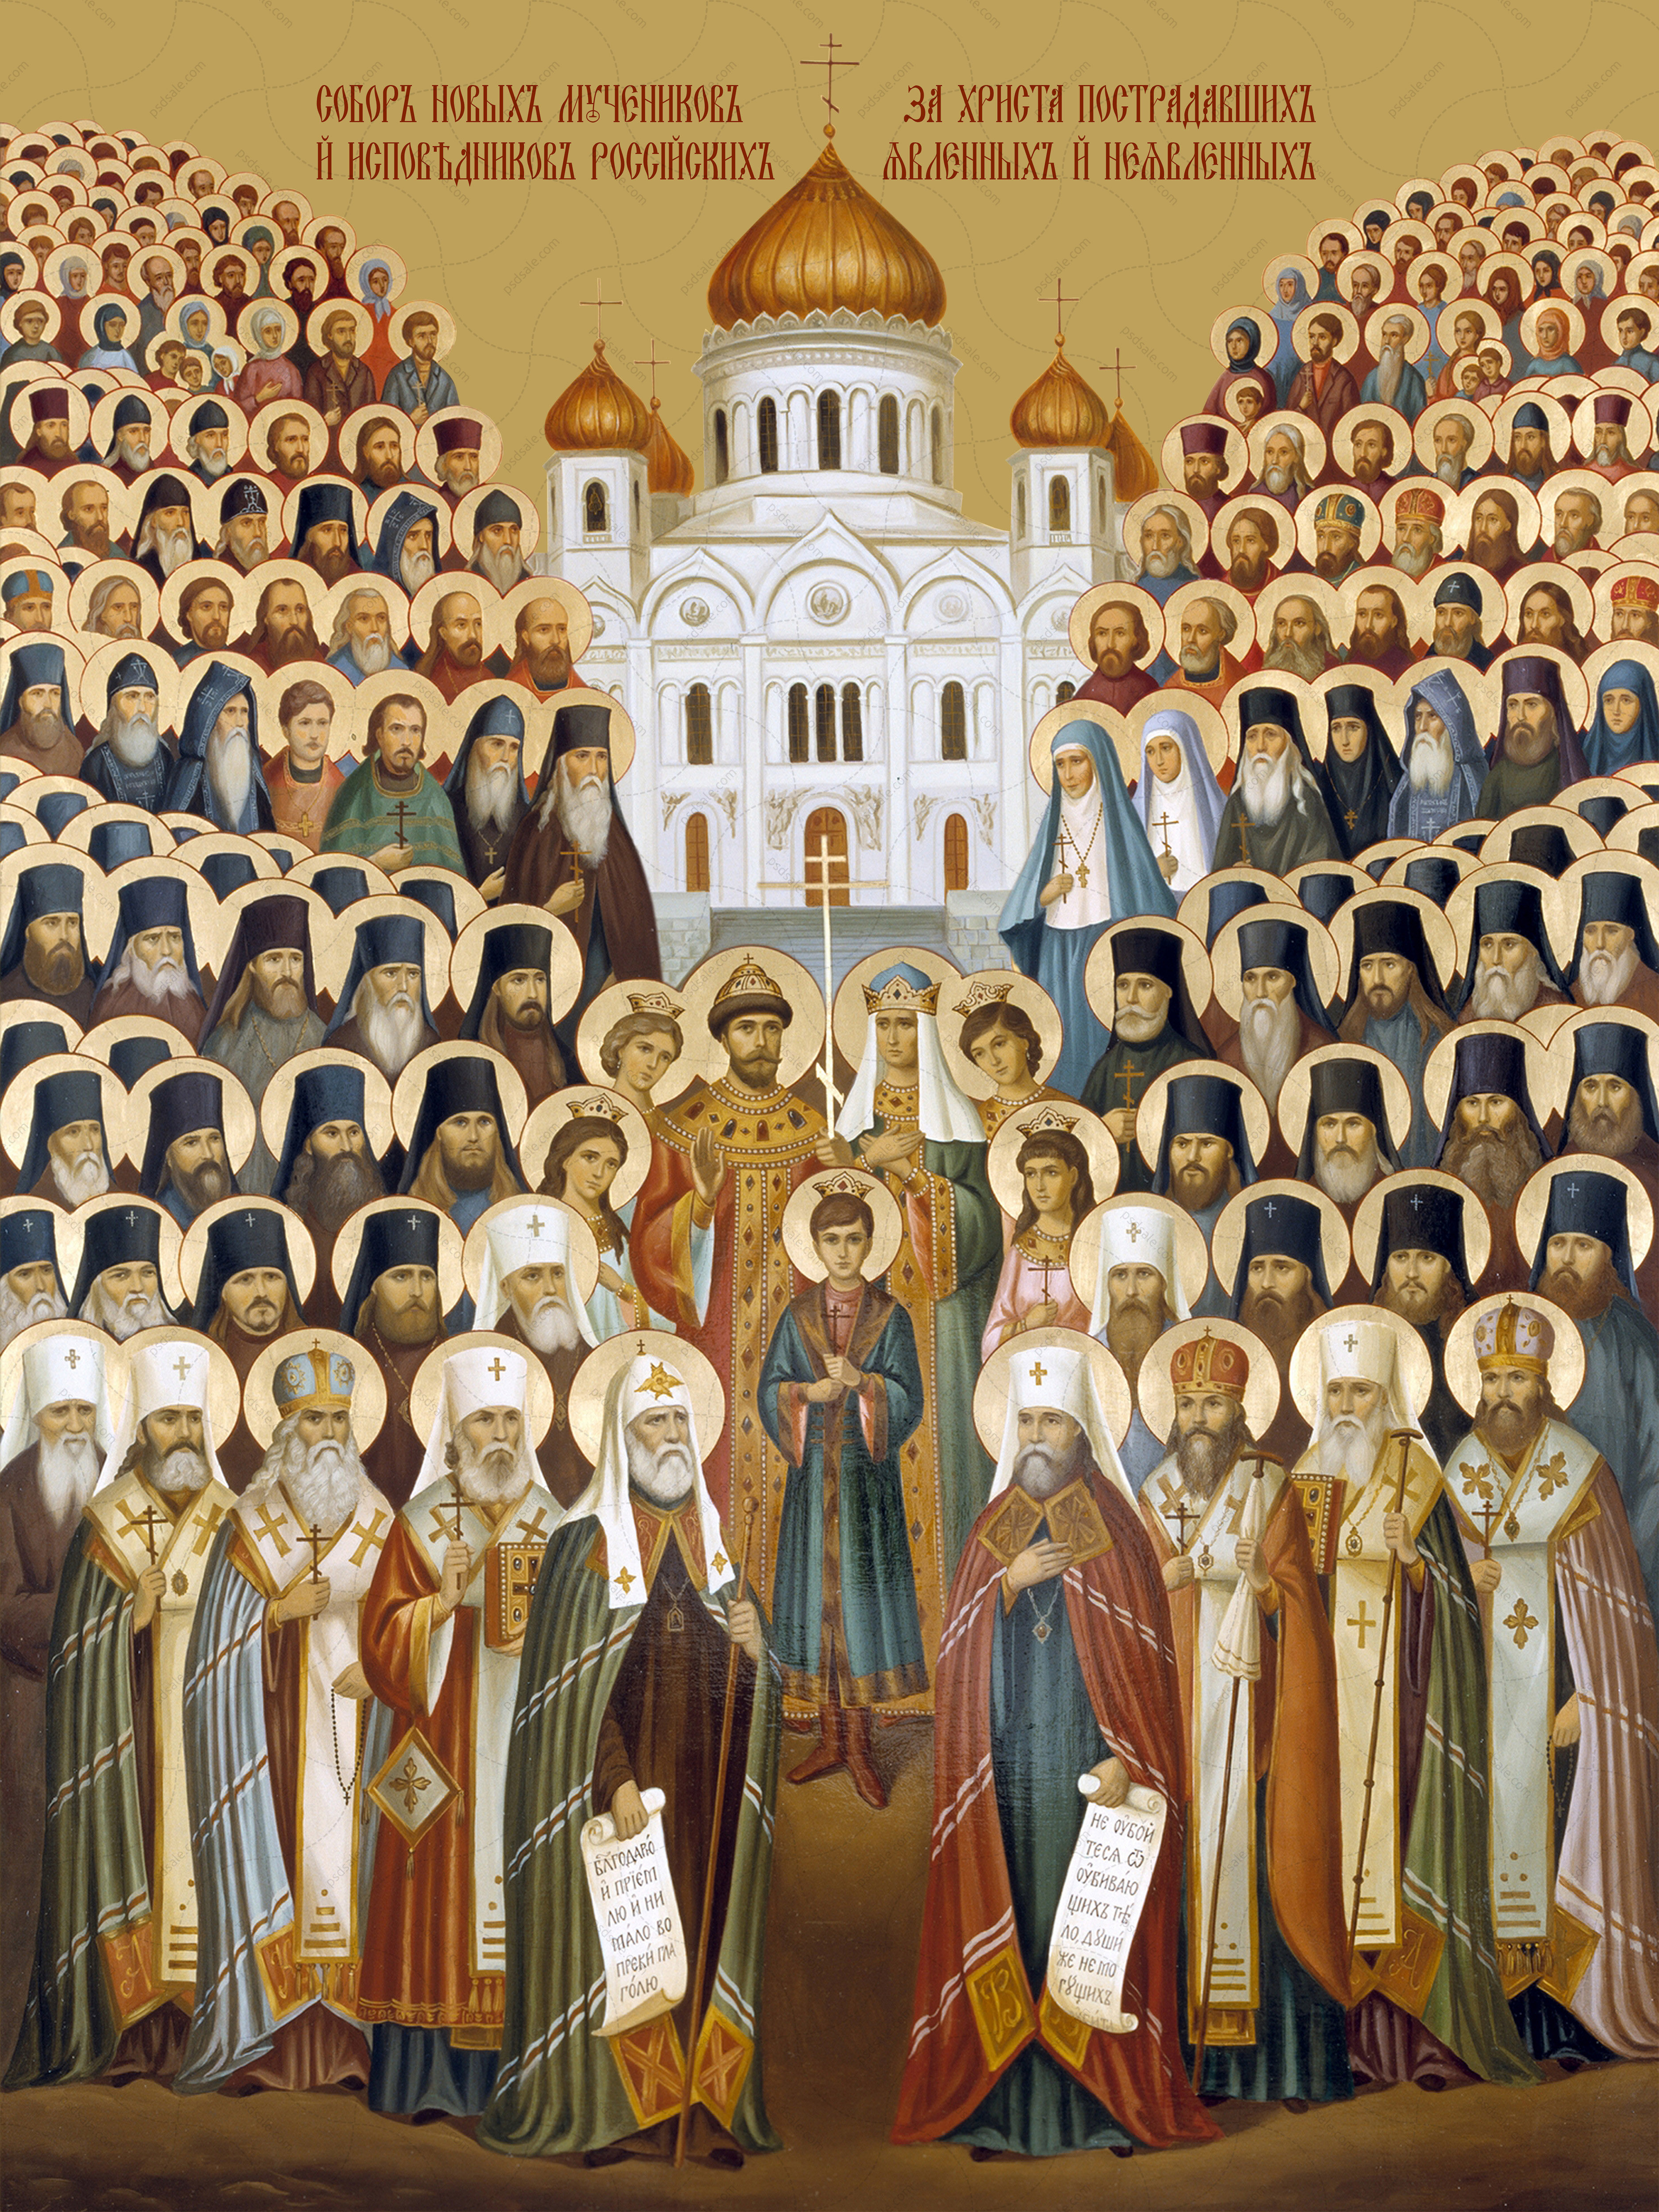 История православных святых. Икона собора новомучеников и исповедников российских 20 века.